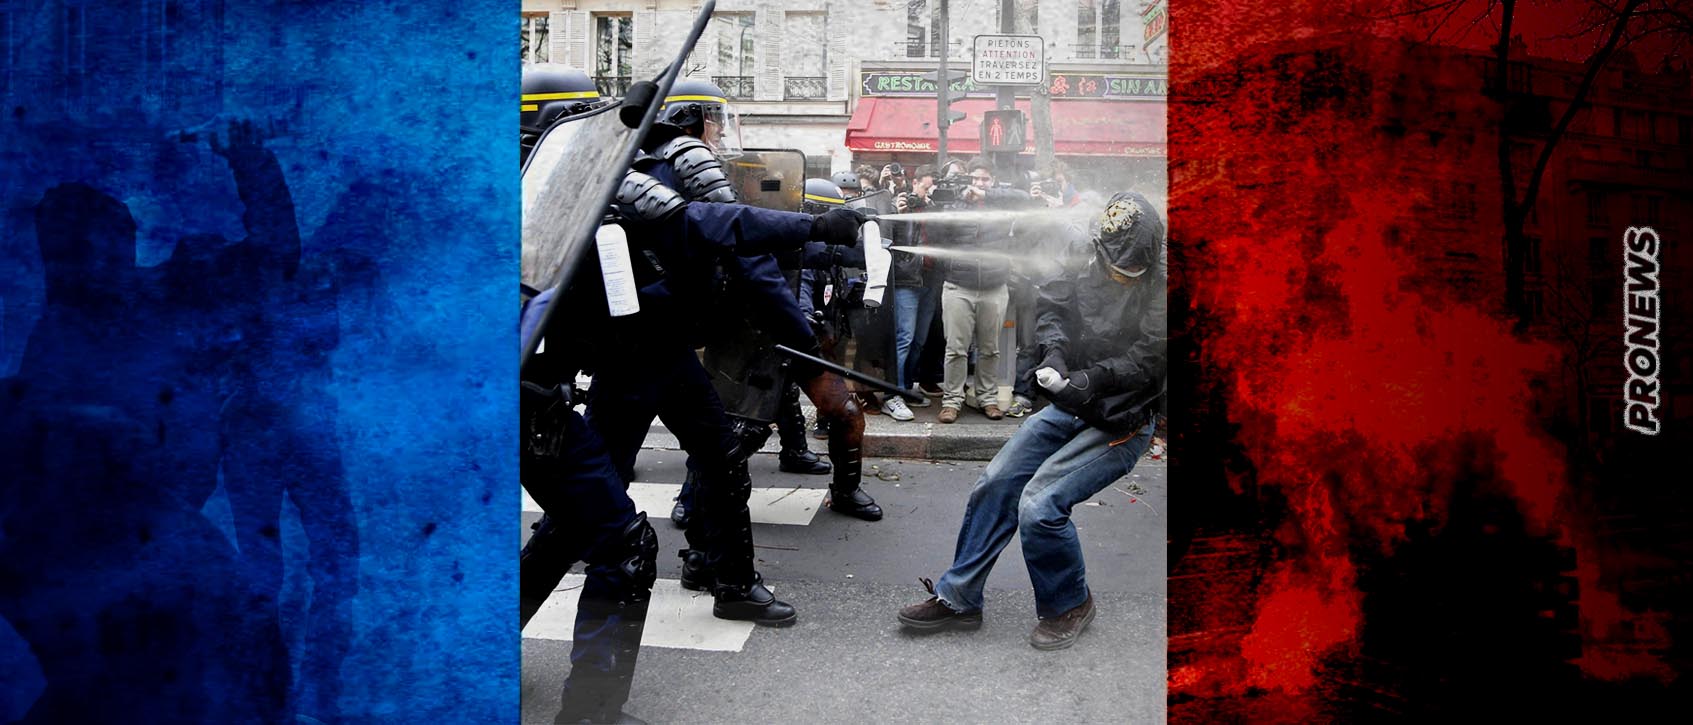 Σε «εμπόλεμη ζώνη» μετατράπηκε η Γαλλία: Μάχες σώμα με σώμα και «προσωπικές μονομαχίες» μεταξύ Γάλλων διαδηλωτών και αστυνομικών (βίντεο)